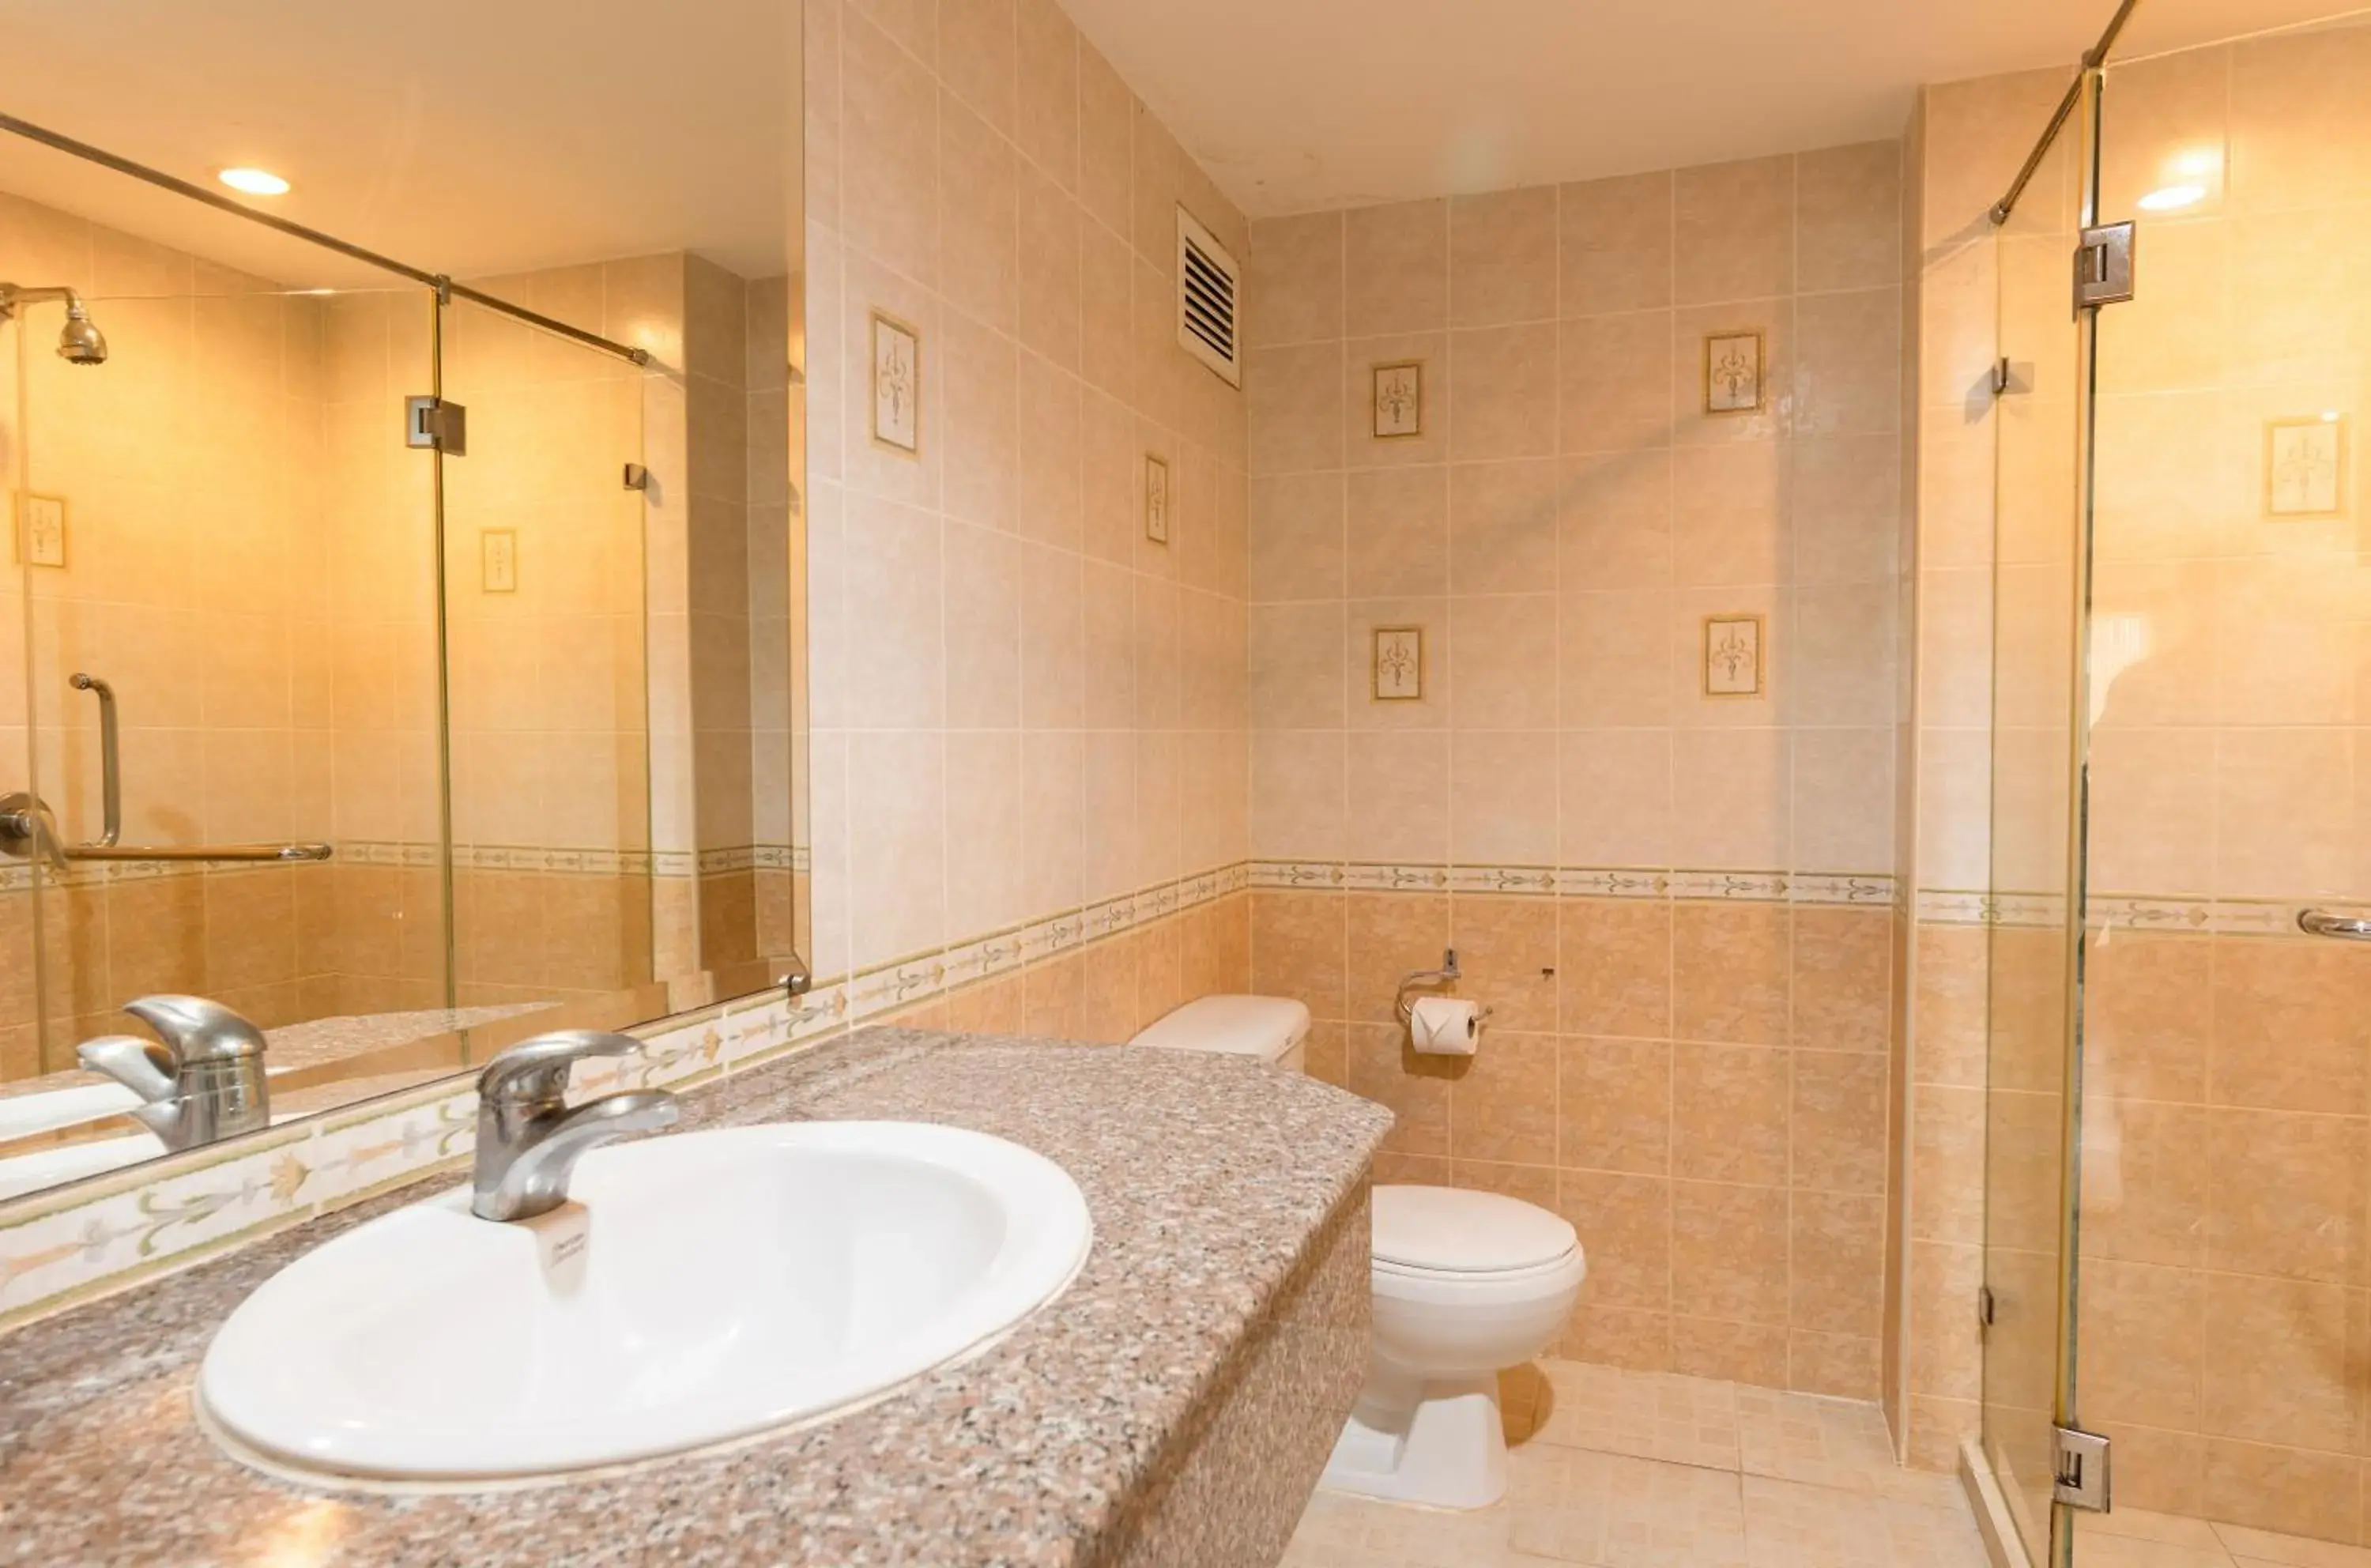 Shower, Bathroom in Jomtien Beach Residence